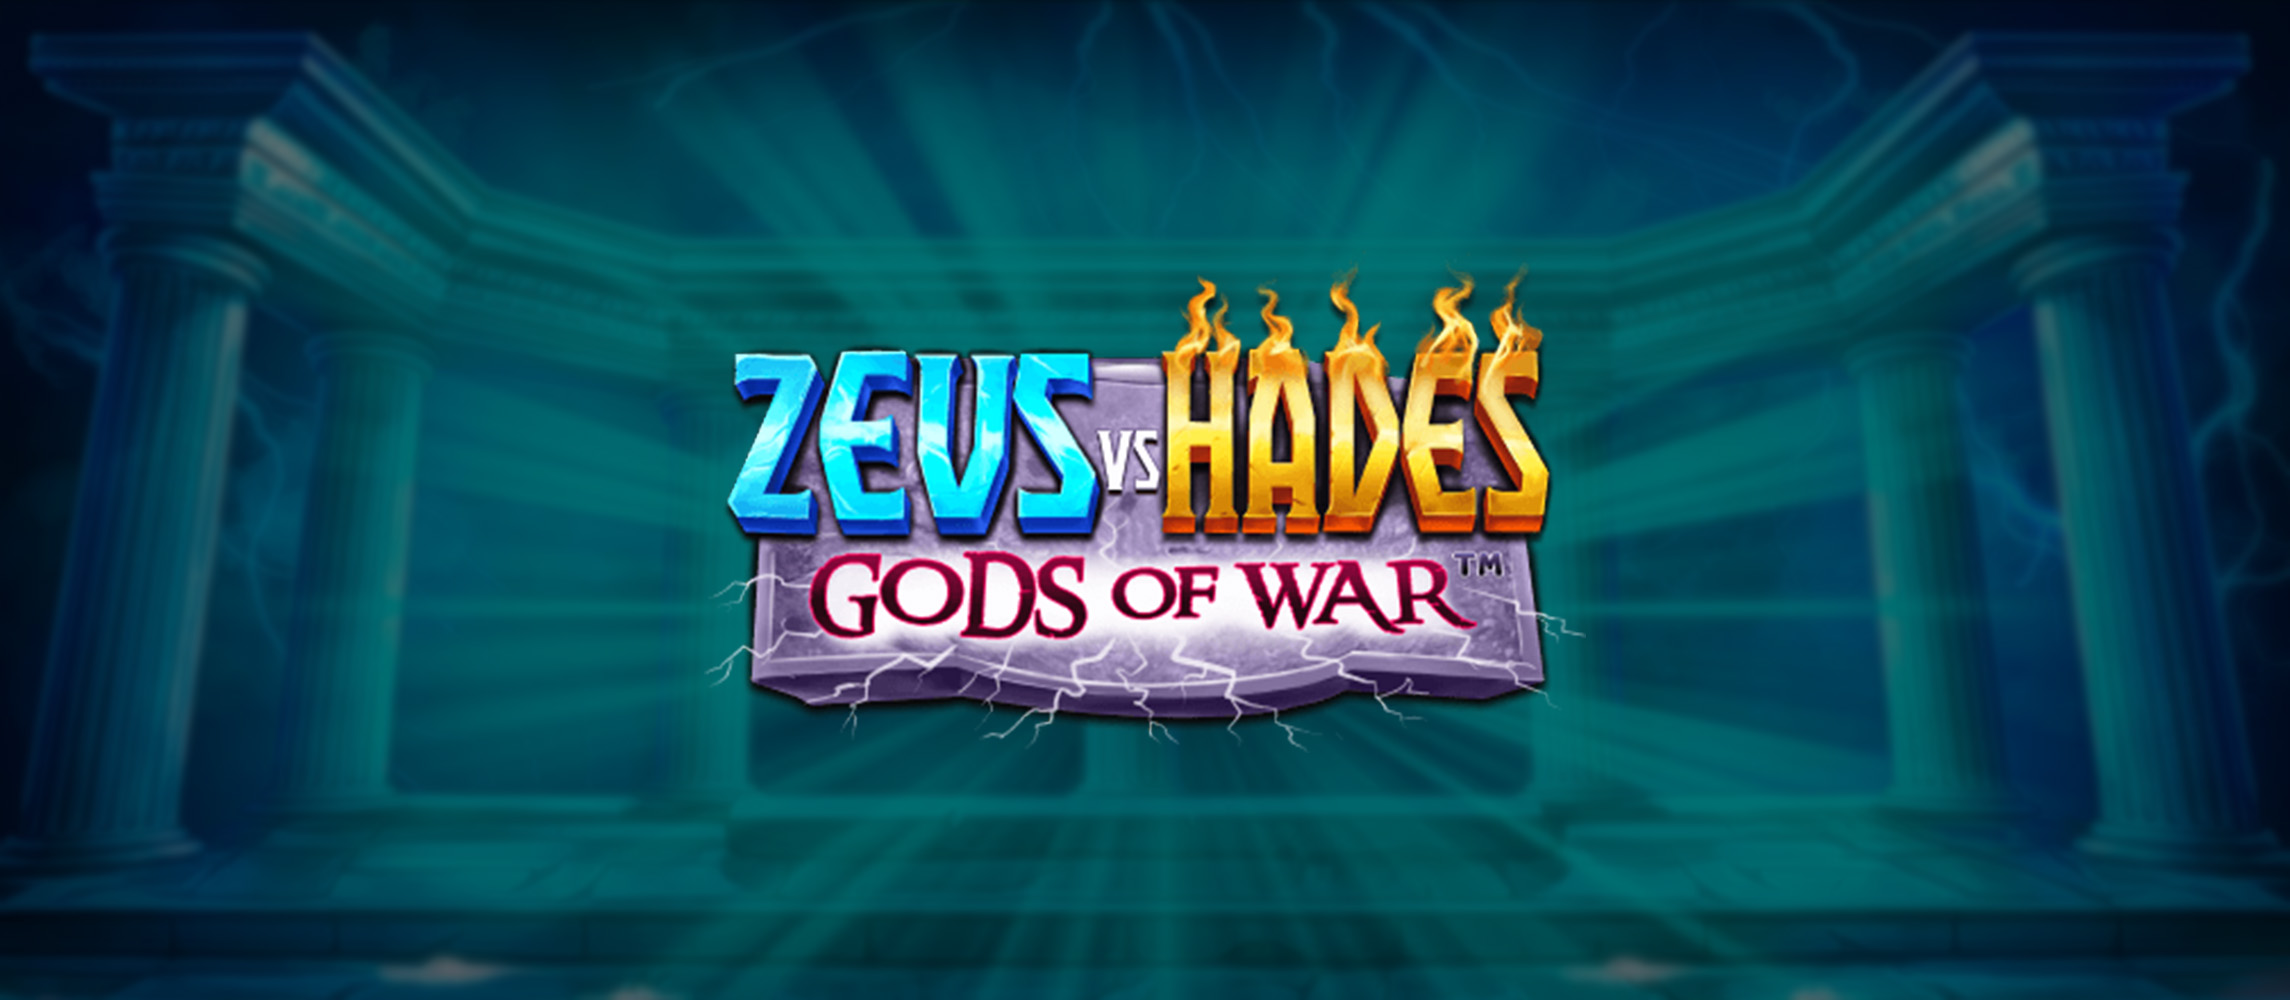 Zeus vs Hades Slot Game